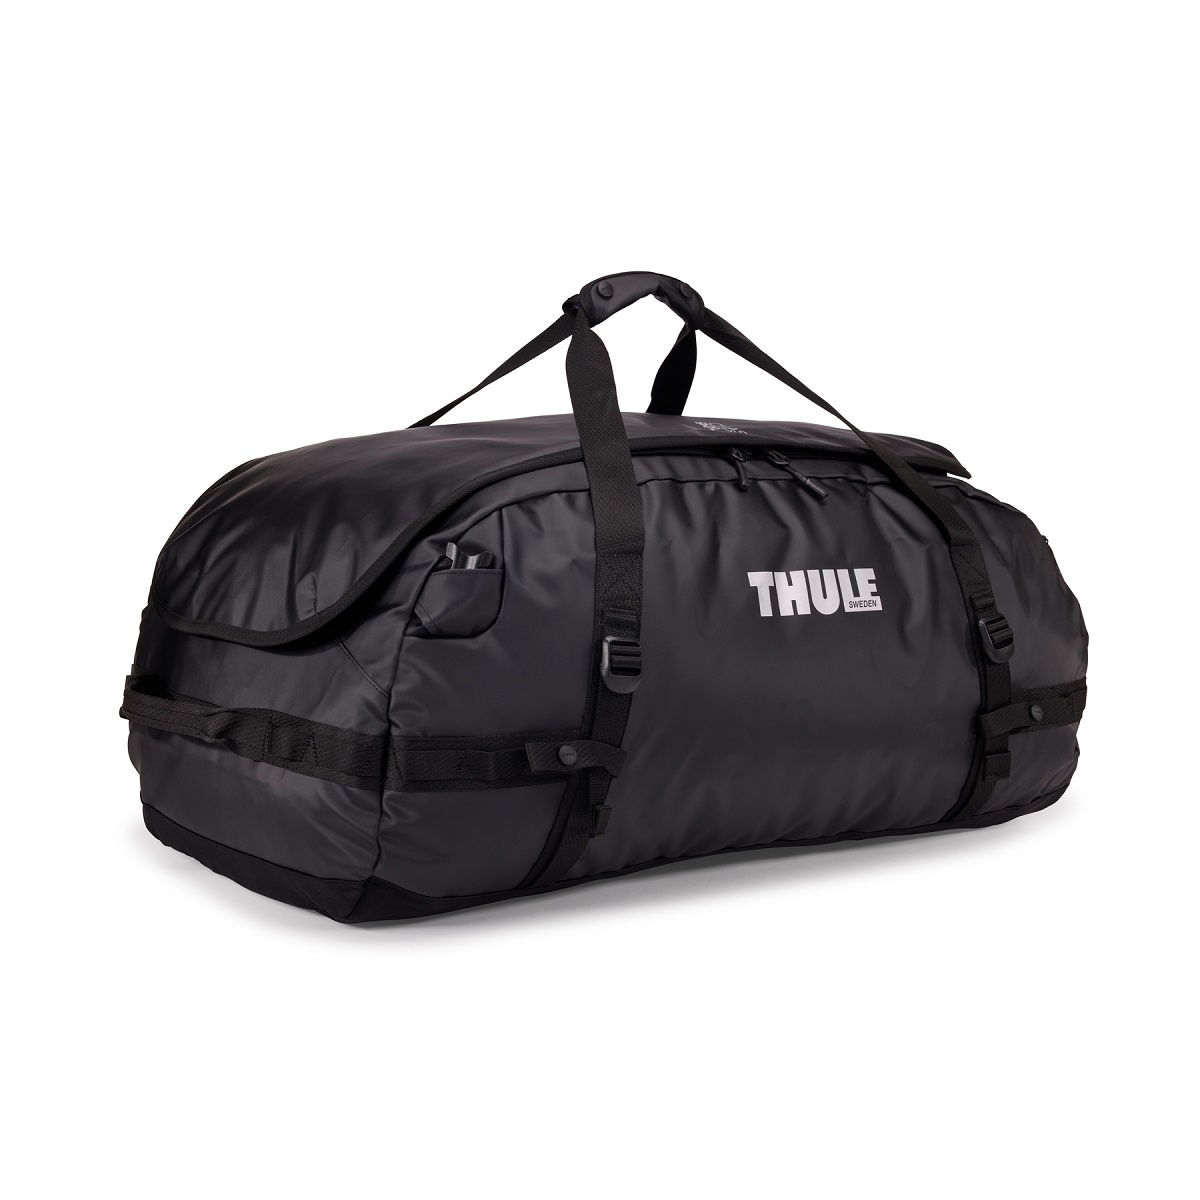 Sportska/putna torba i ruksak 2u1 Thule Chasm 90 L - crna